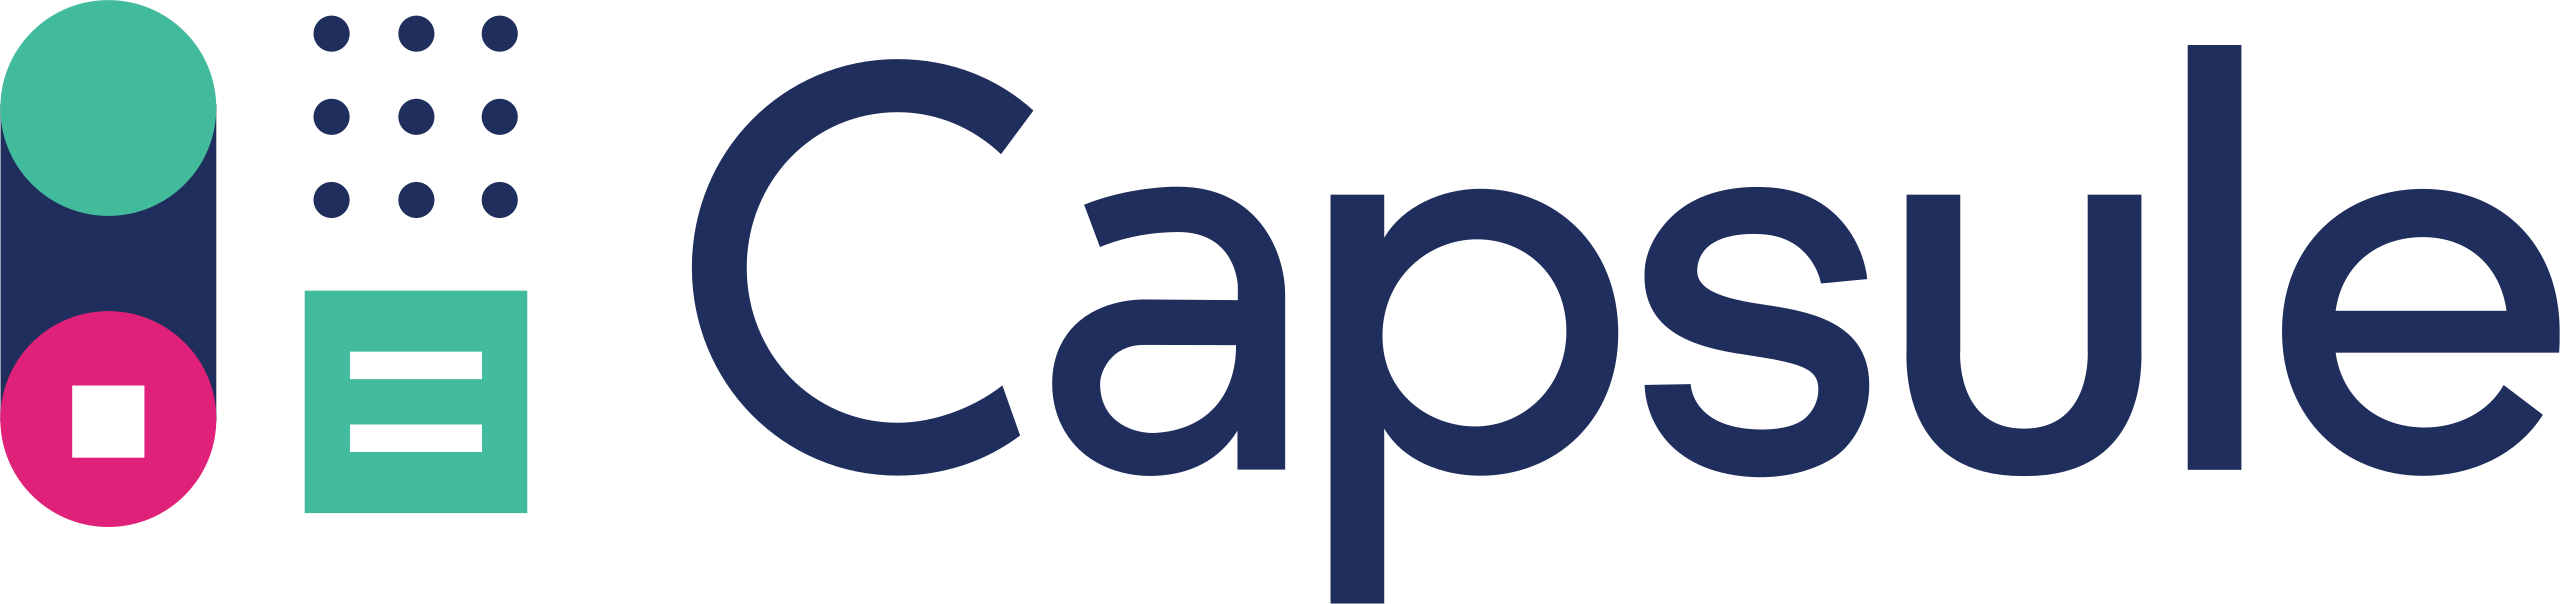 2560px-Capsule_Logo_Full.svg